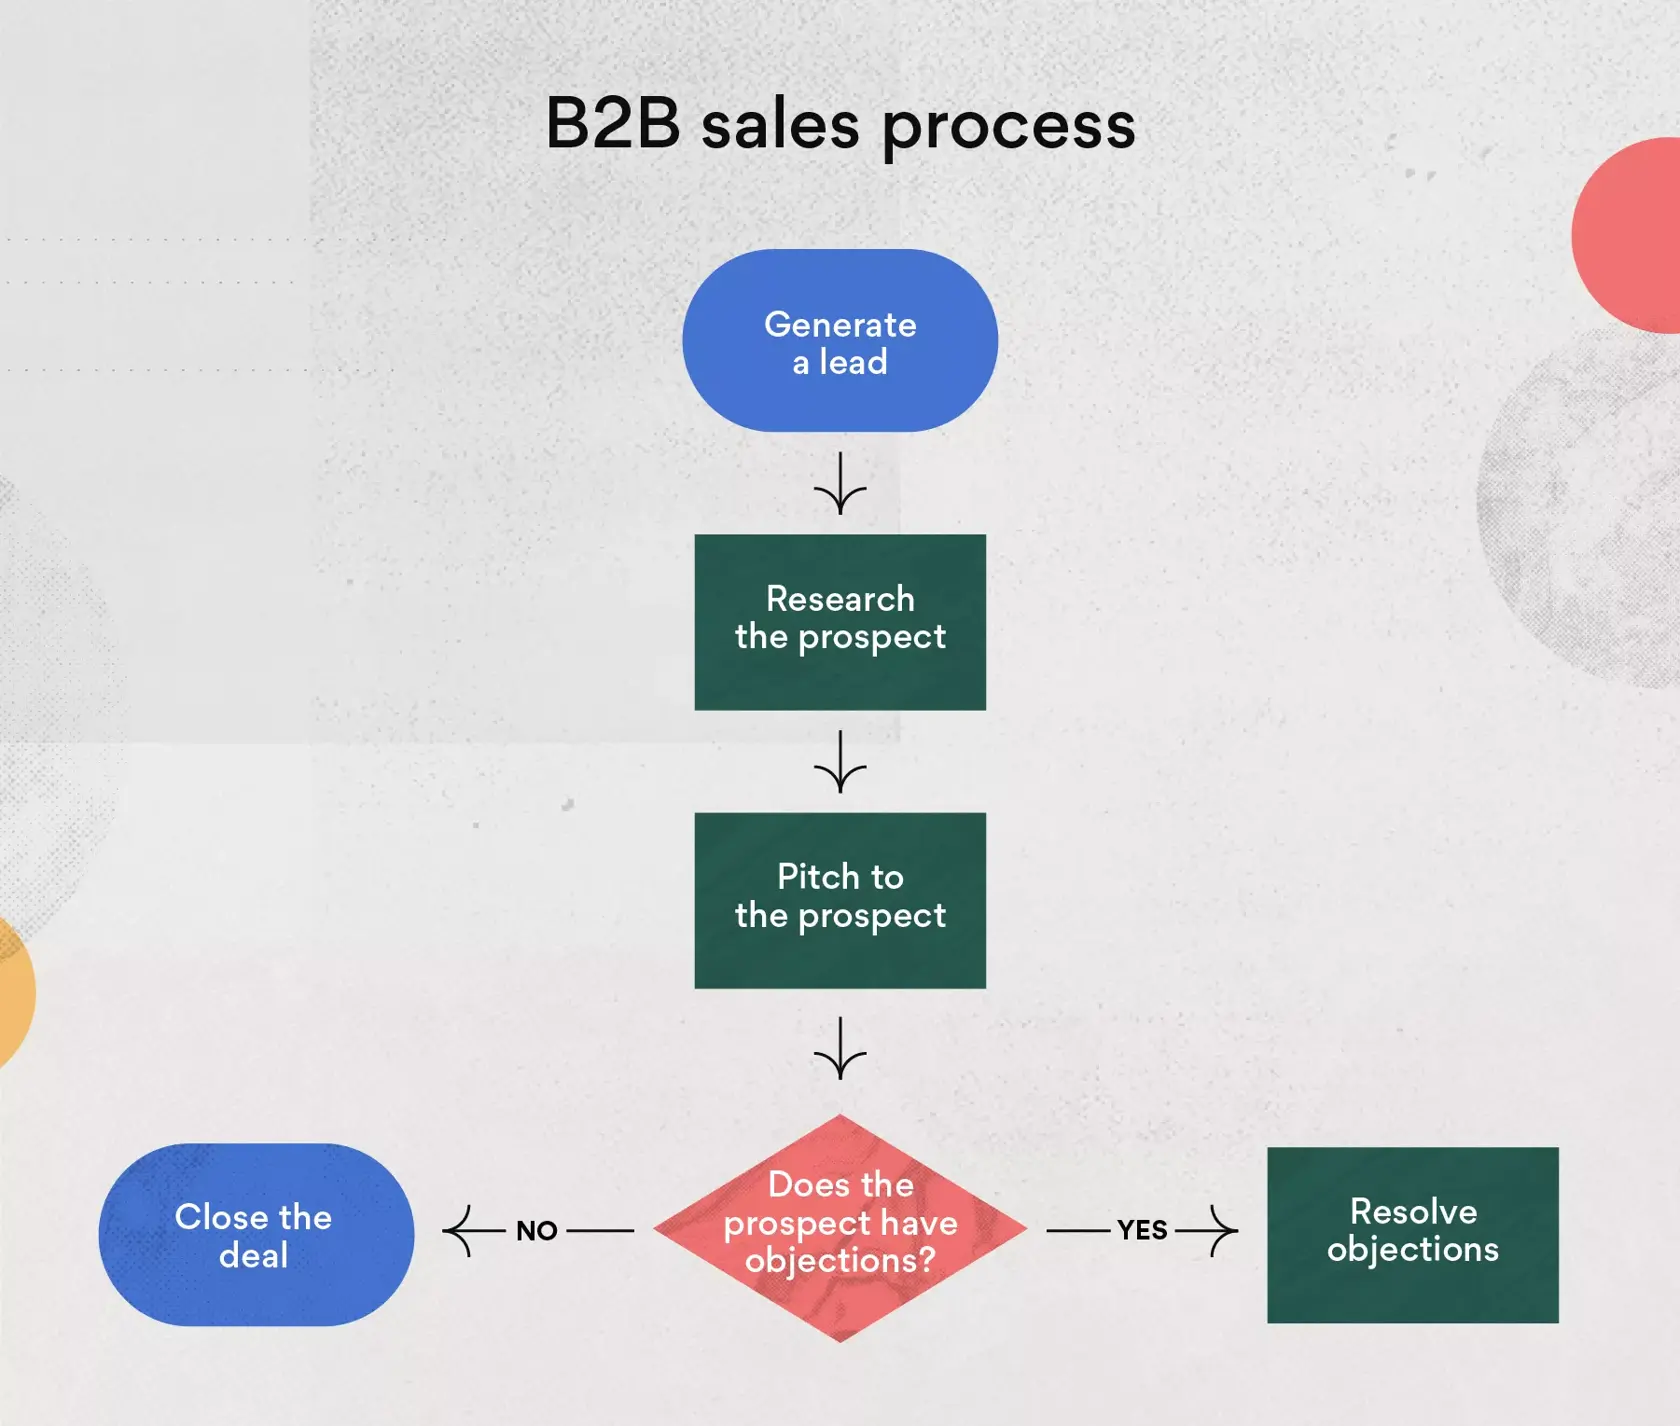 Exemplo de processo de venda B2B (Business-to-business)